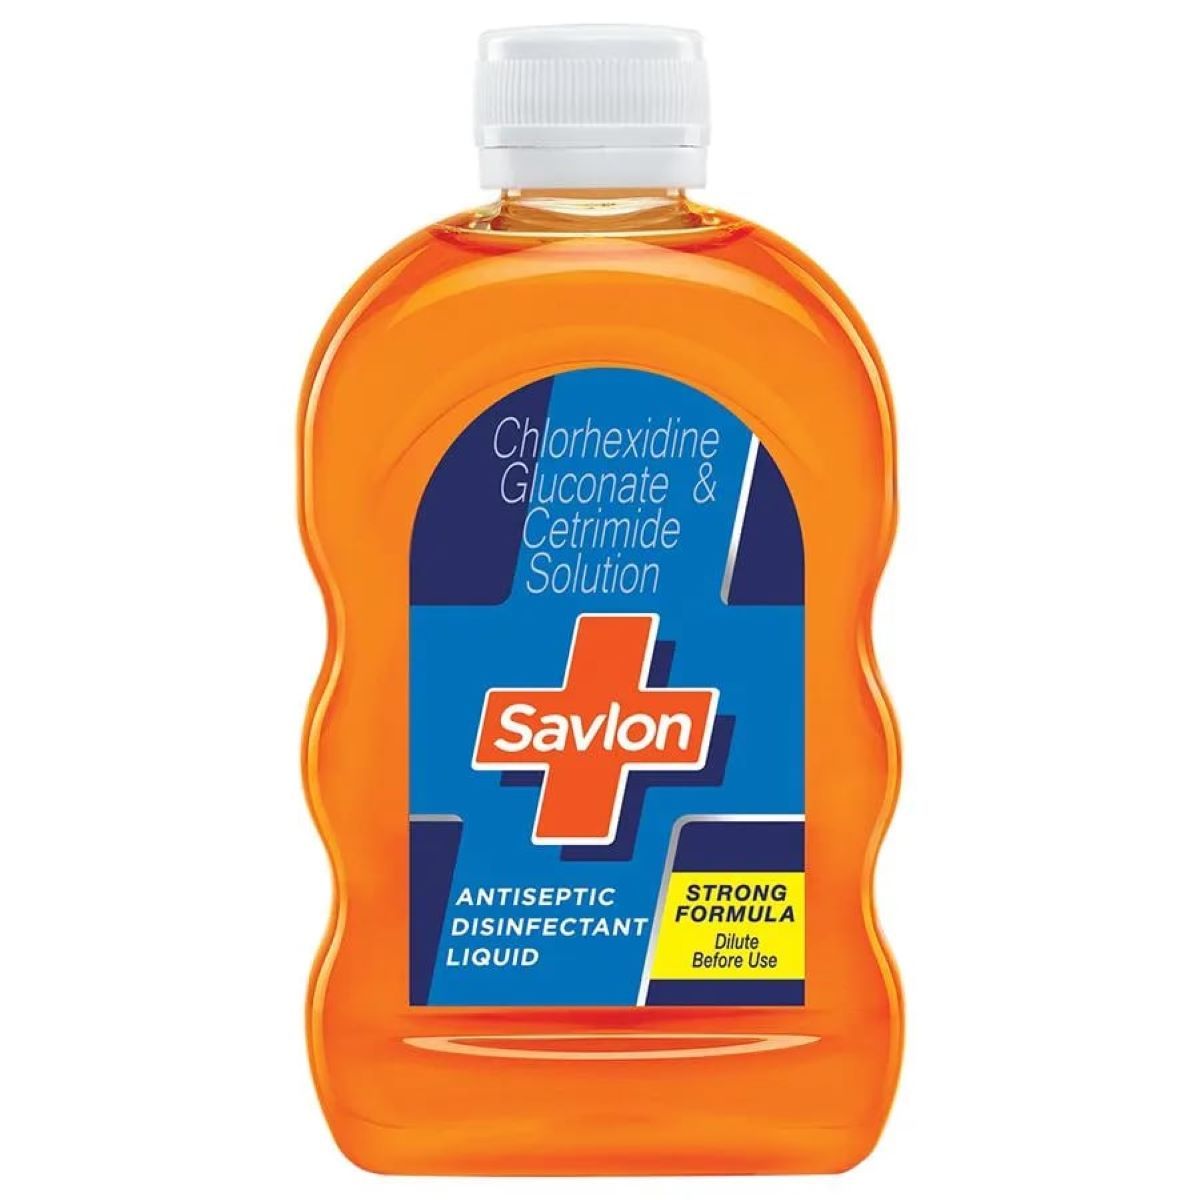 Buy Savlon Antiseptic Disinfectant Liquid, 100 ml Online